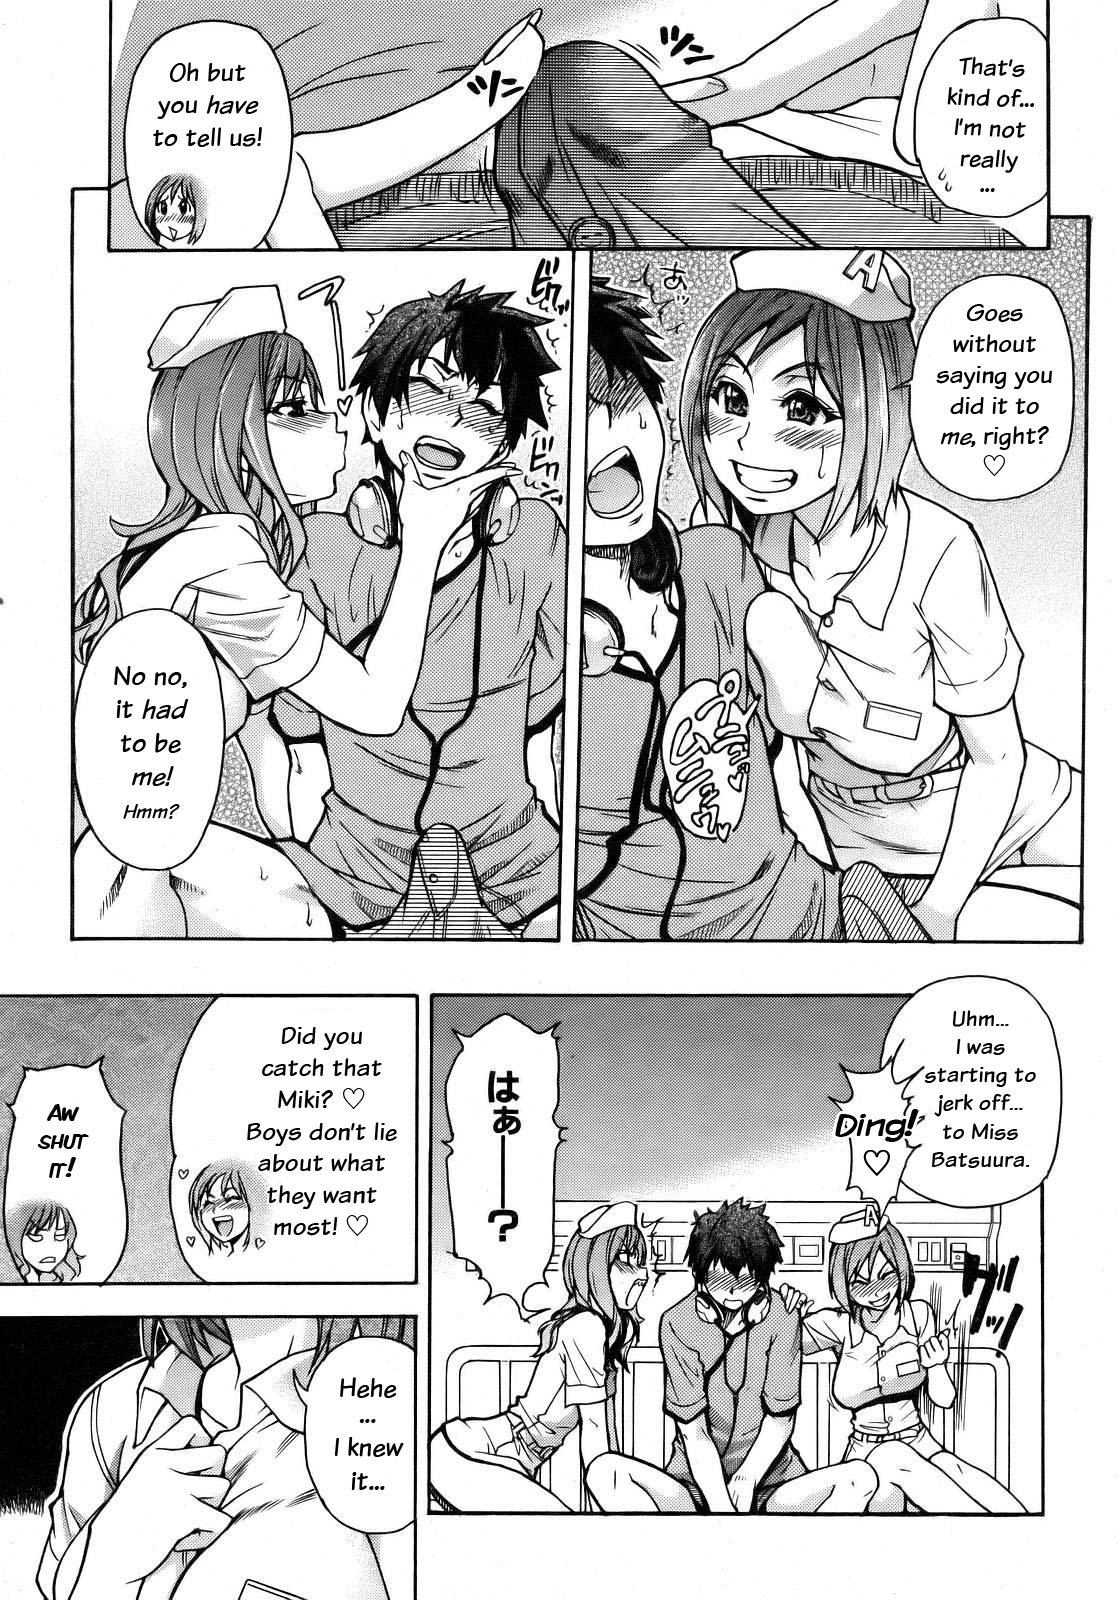 [Shiwasu no Okina] Musume. No Iru Fuuzoku Biru | Musume in a House of Vice Ch. 1-3 [English] [Overlook] page 29 full